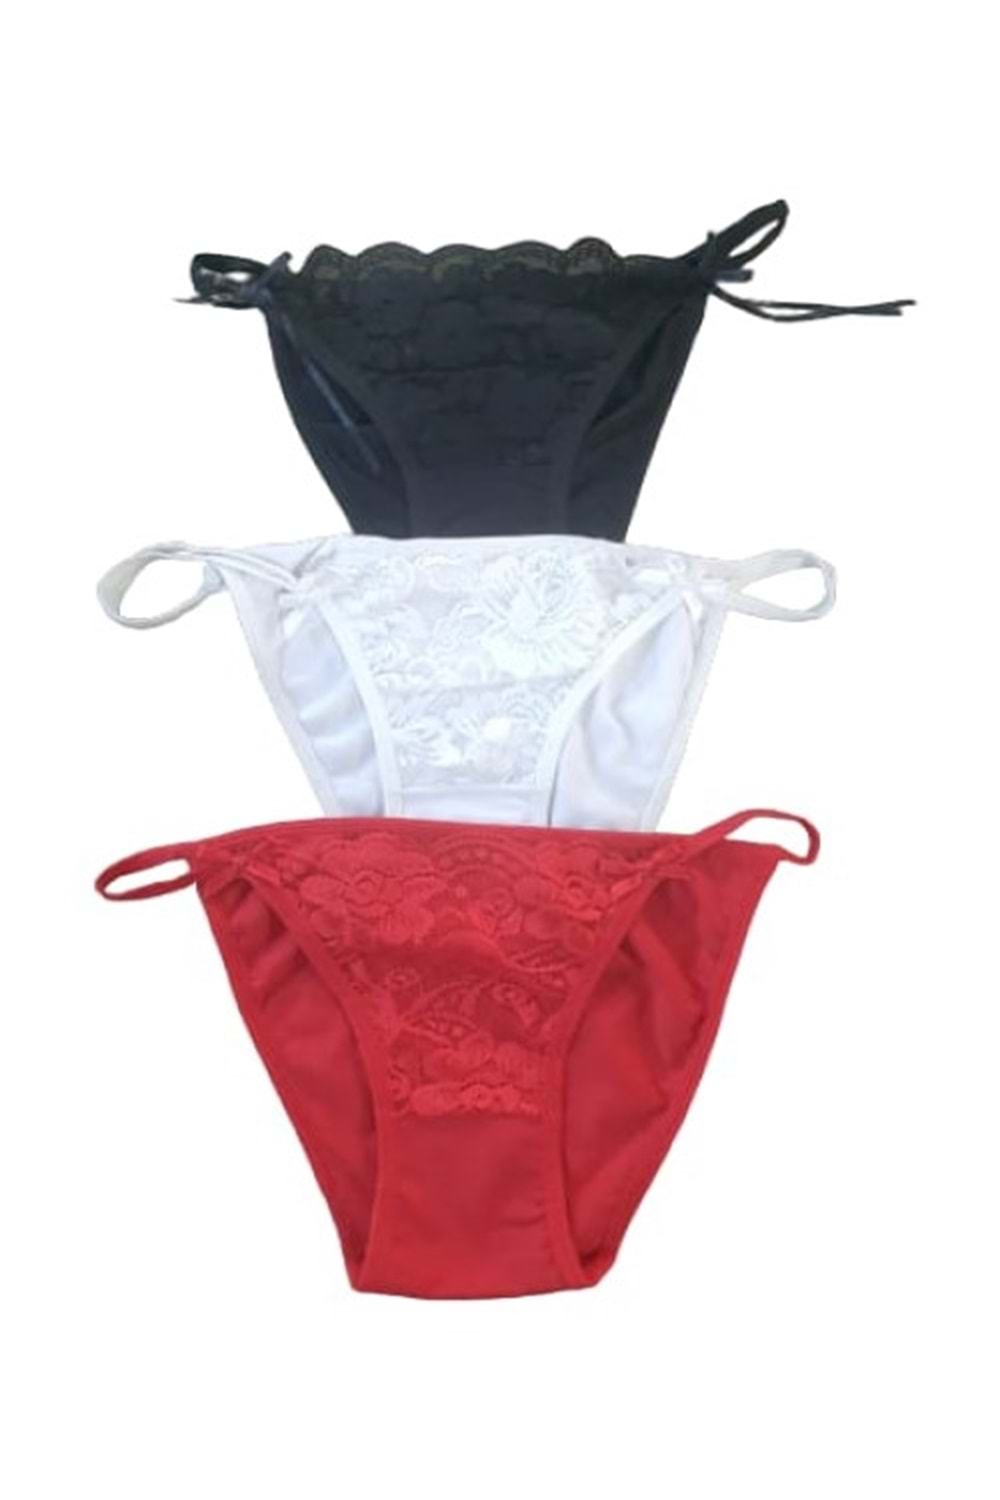 Atilla Kadın Fantazi Dantelli Bikini Külot A-00082 (3 Paket) - Kırmızı - TEK EBAT